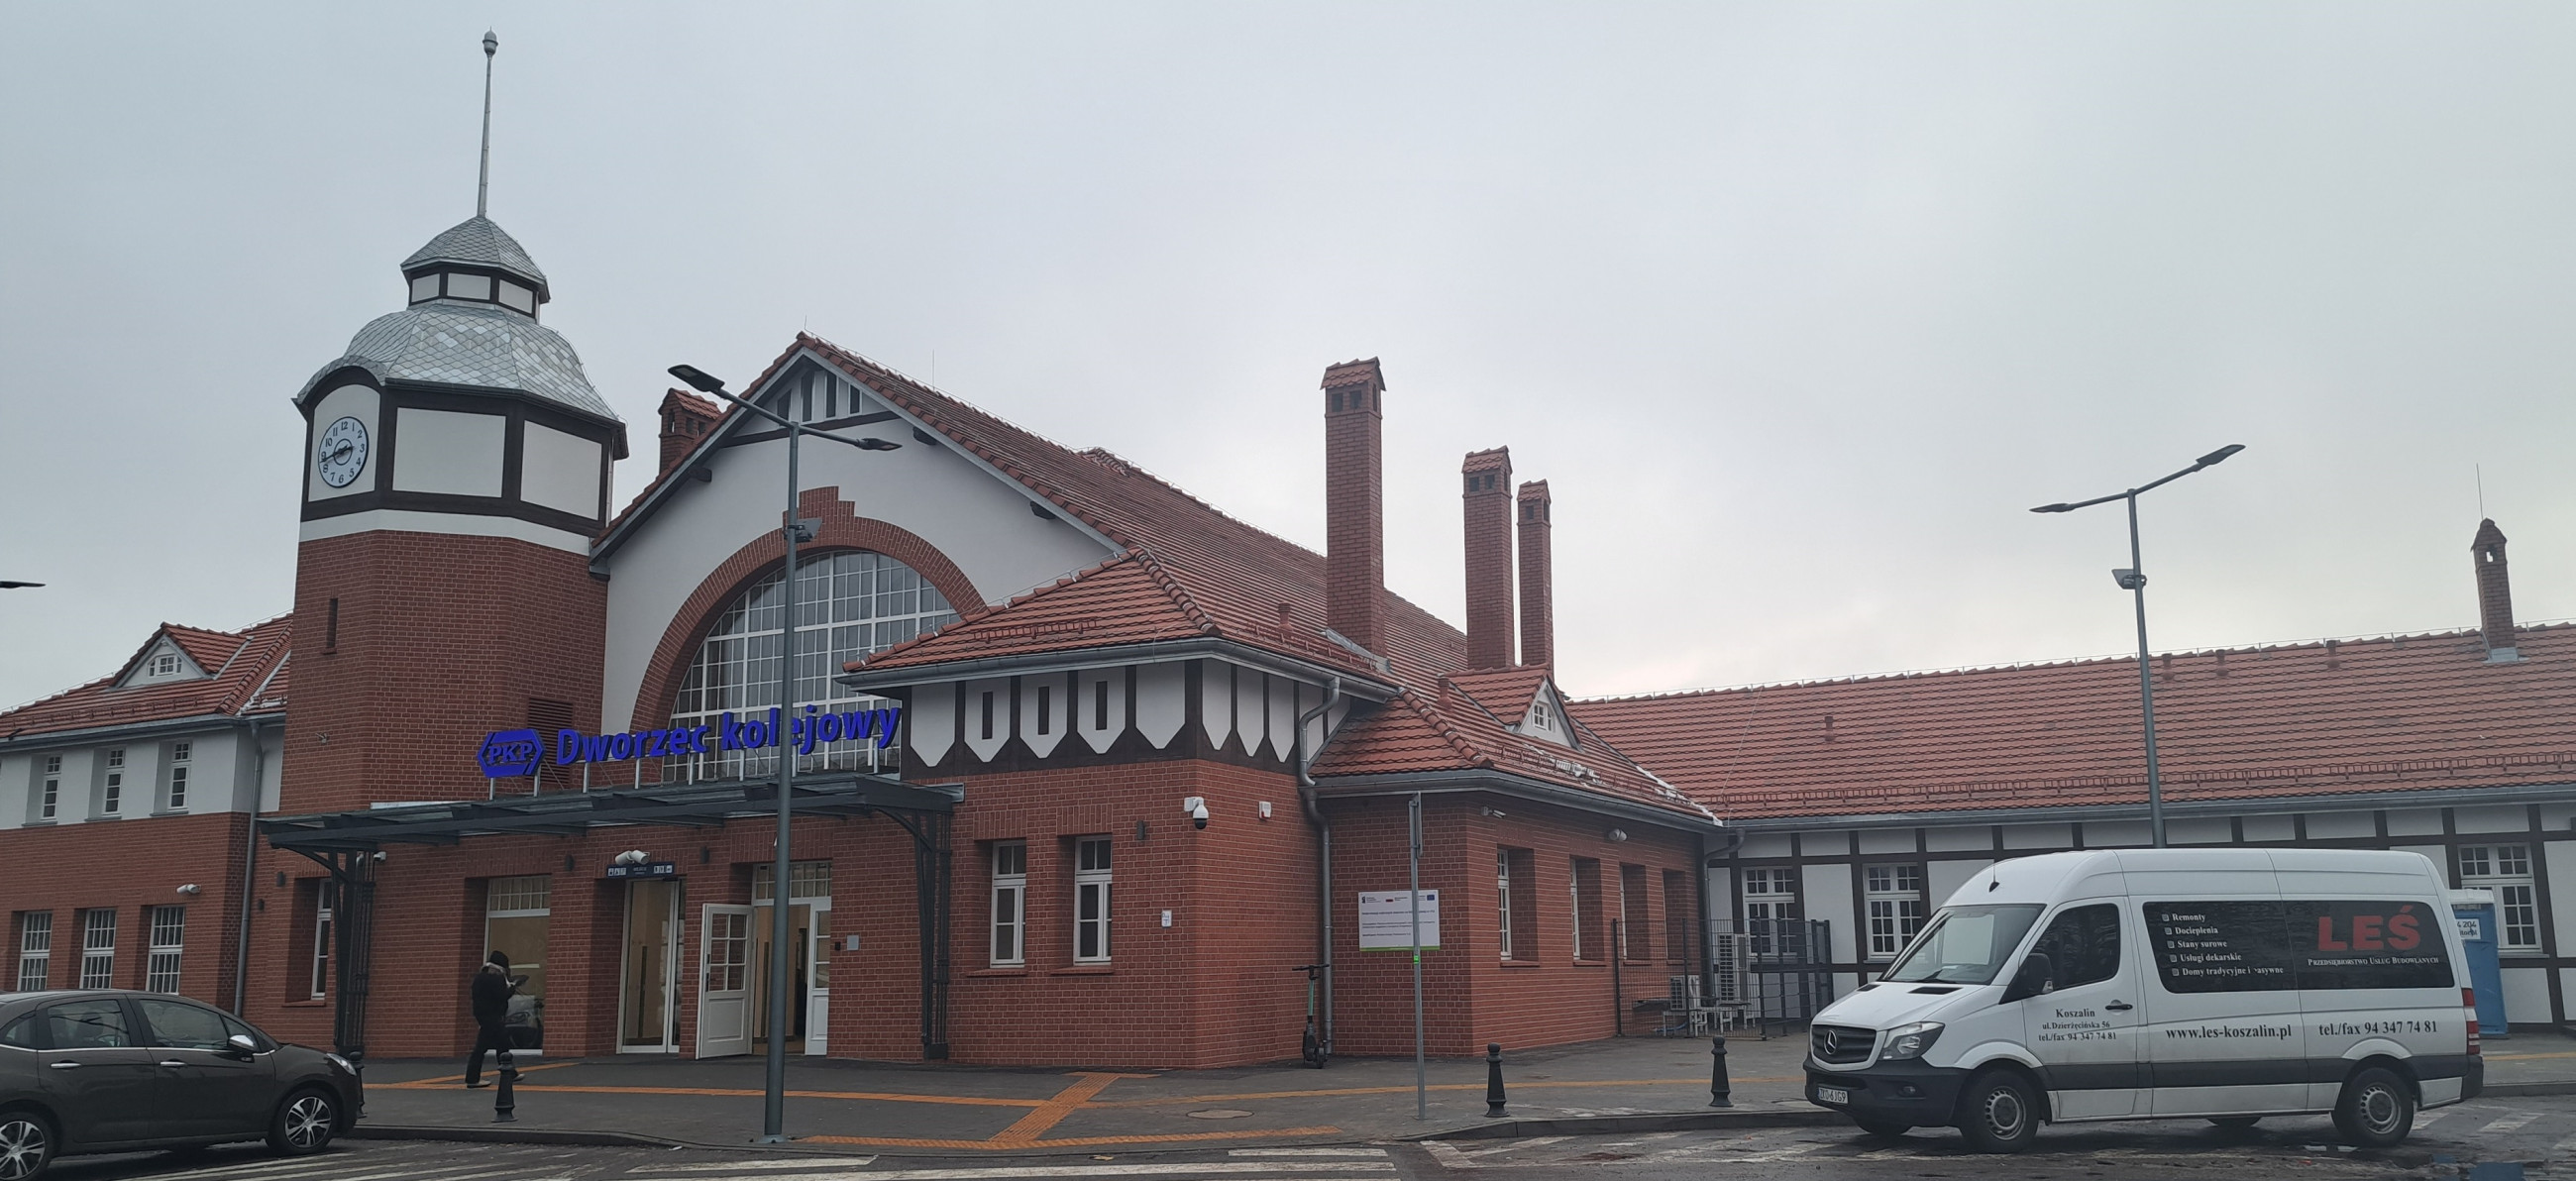 Remont dworca kolejowego w Kołobrzegu